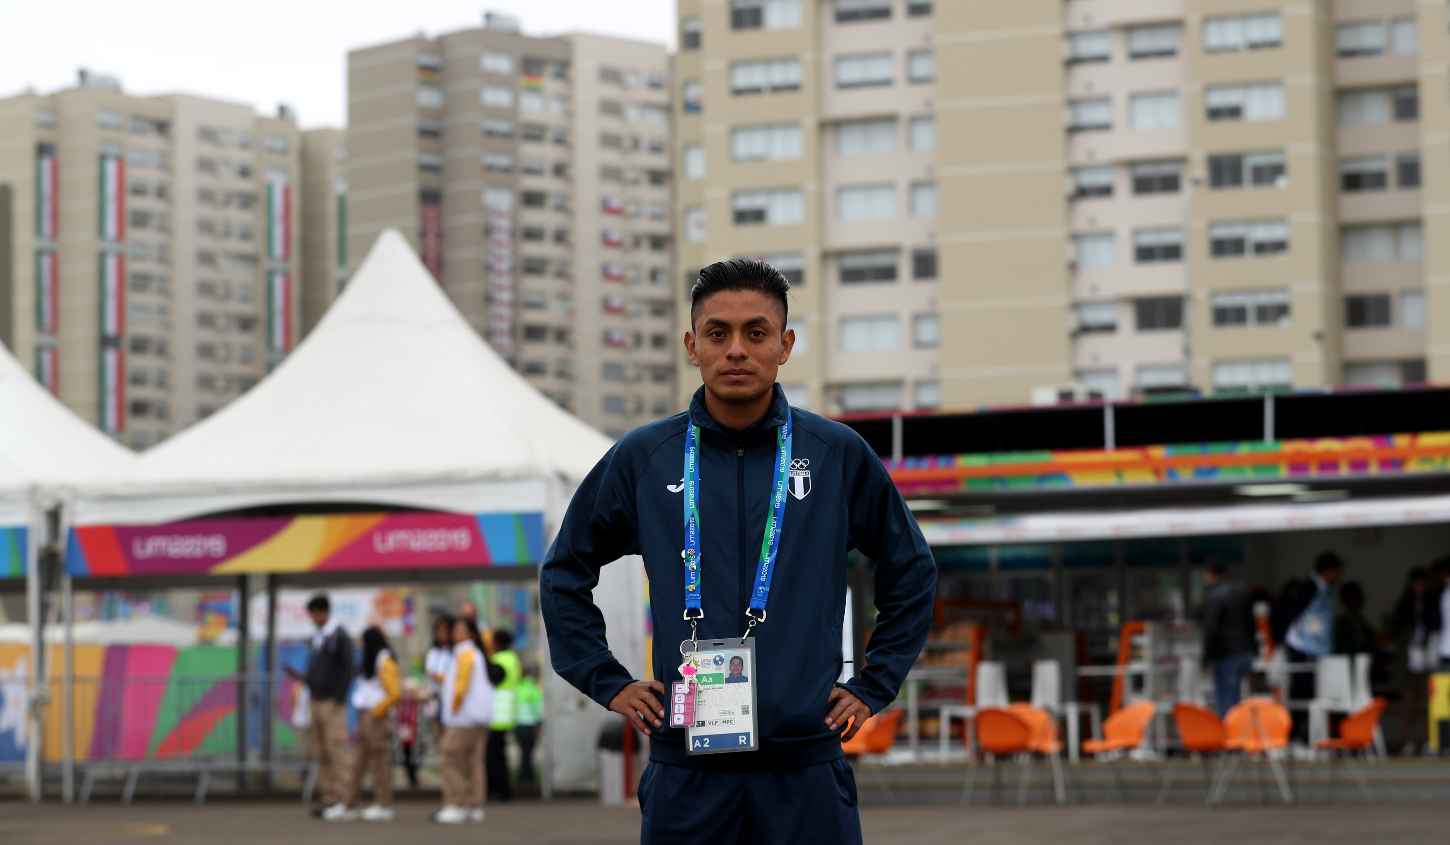 Williams Julajuj buscará sobresalir en el maratón de los Juegos Panamericanos de Lima. (Foto Prensa Libre: Carlos Vicente)